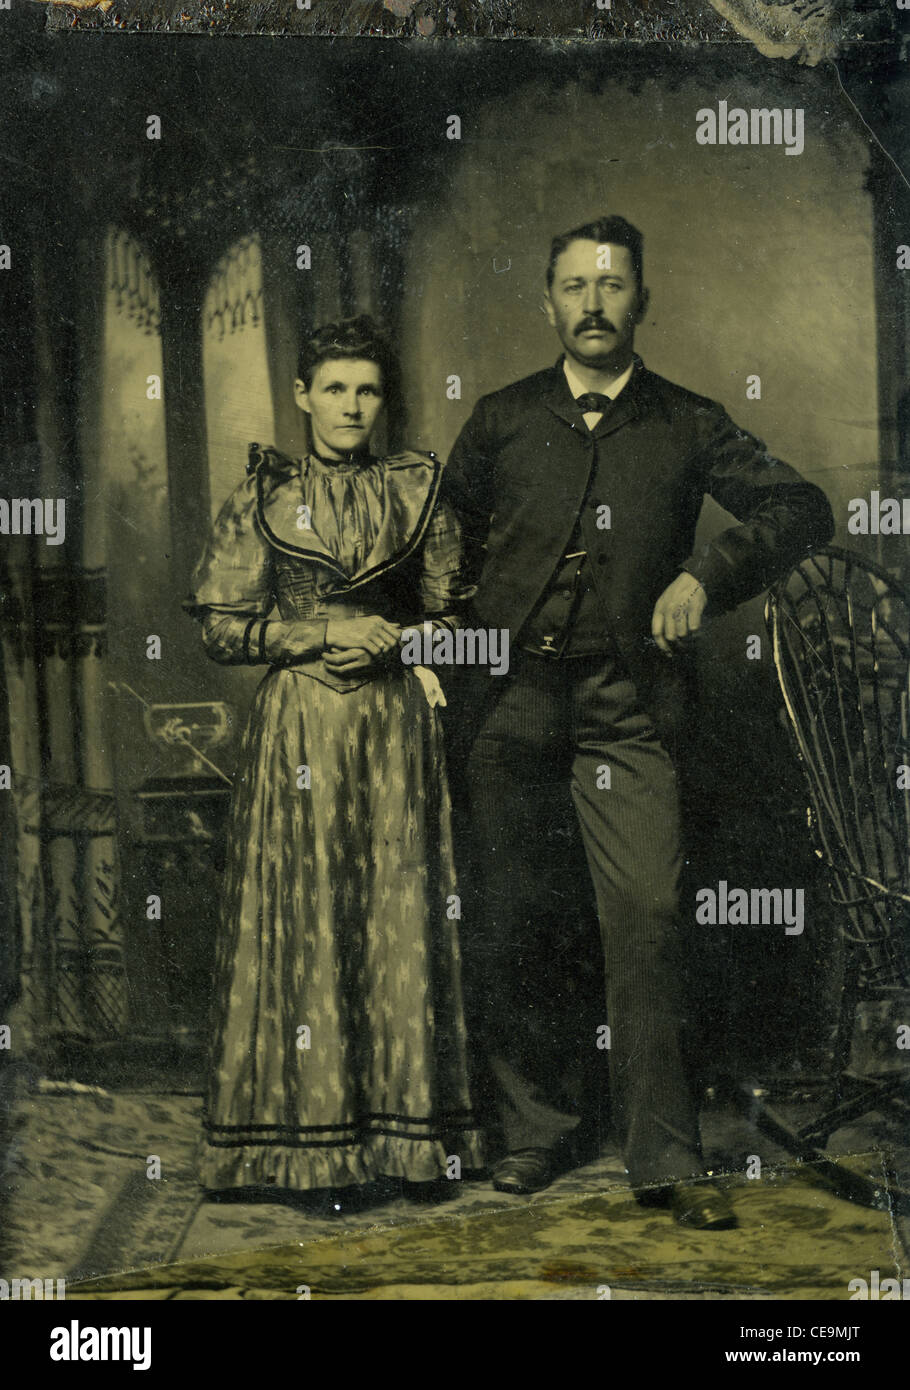 Tin type de couple marié à partir de la fin des années 1800, la mode gothique style saloon portrait noir et blanc old west Banque D'Images